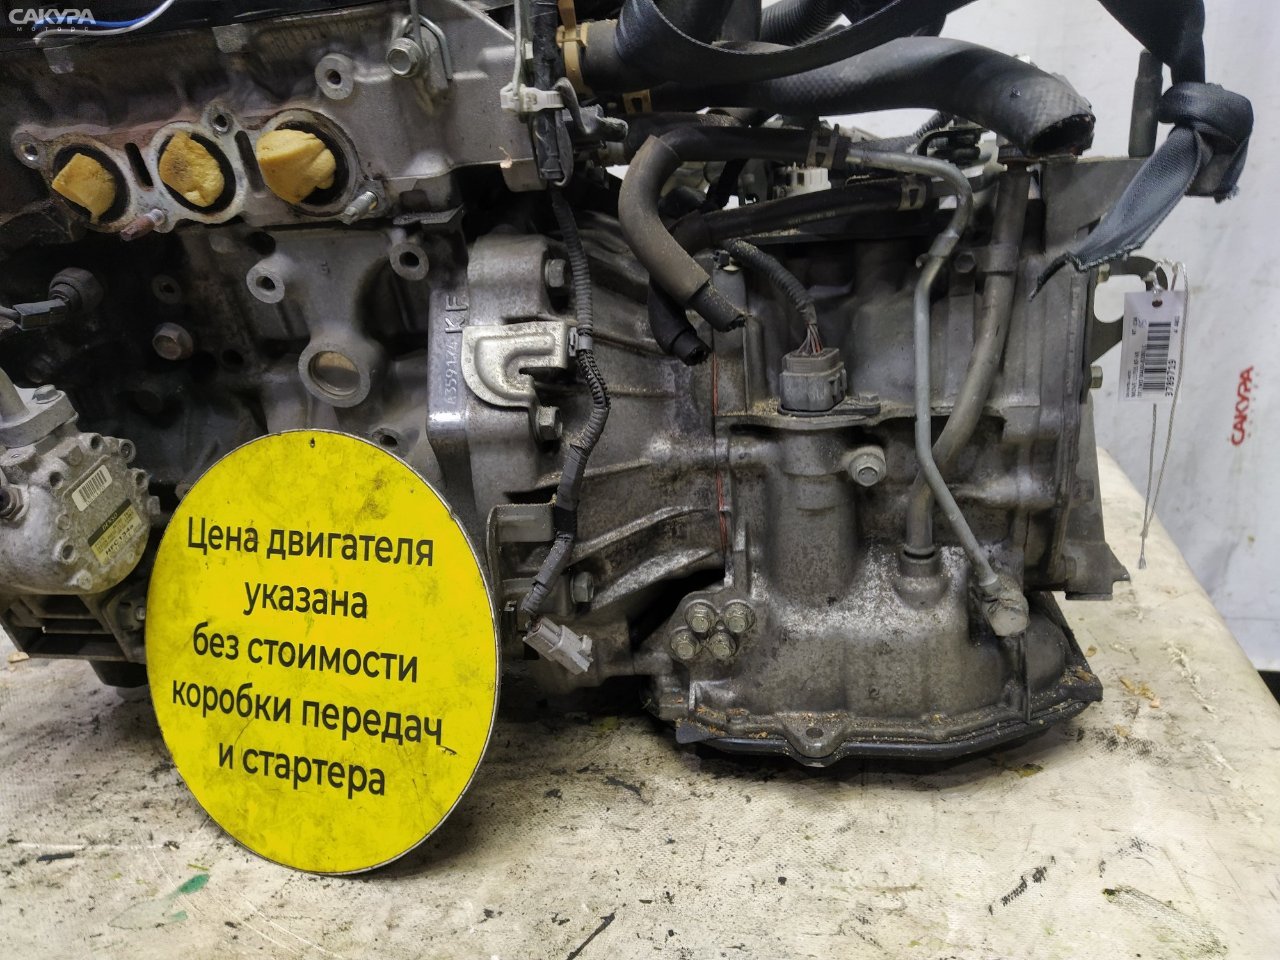 АКПП Daihatsu Move L175S KF-VE: купить в Сакура Красноярск.